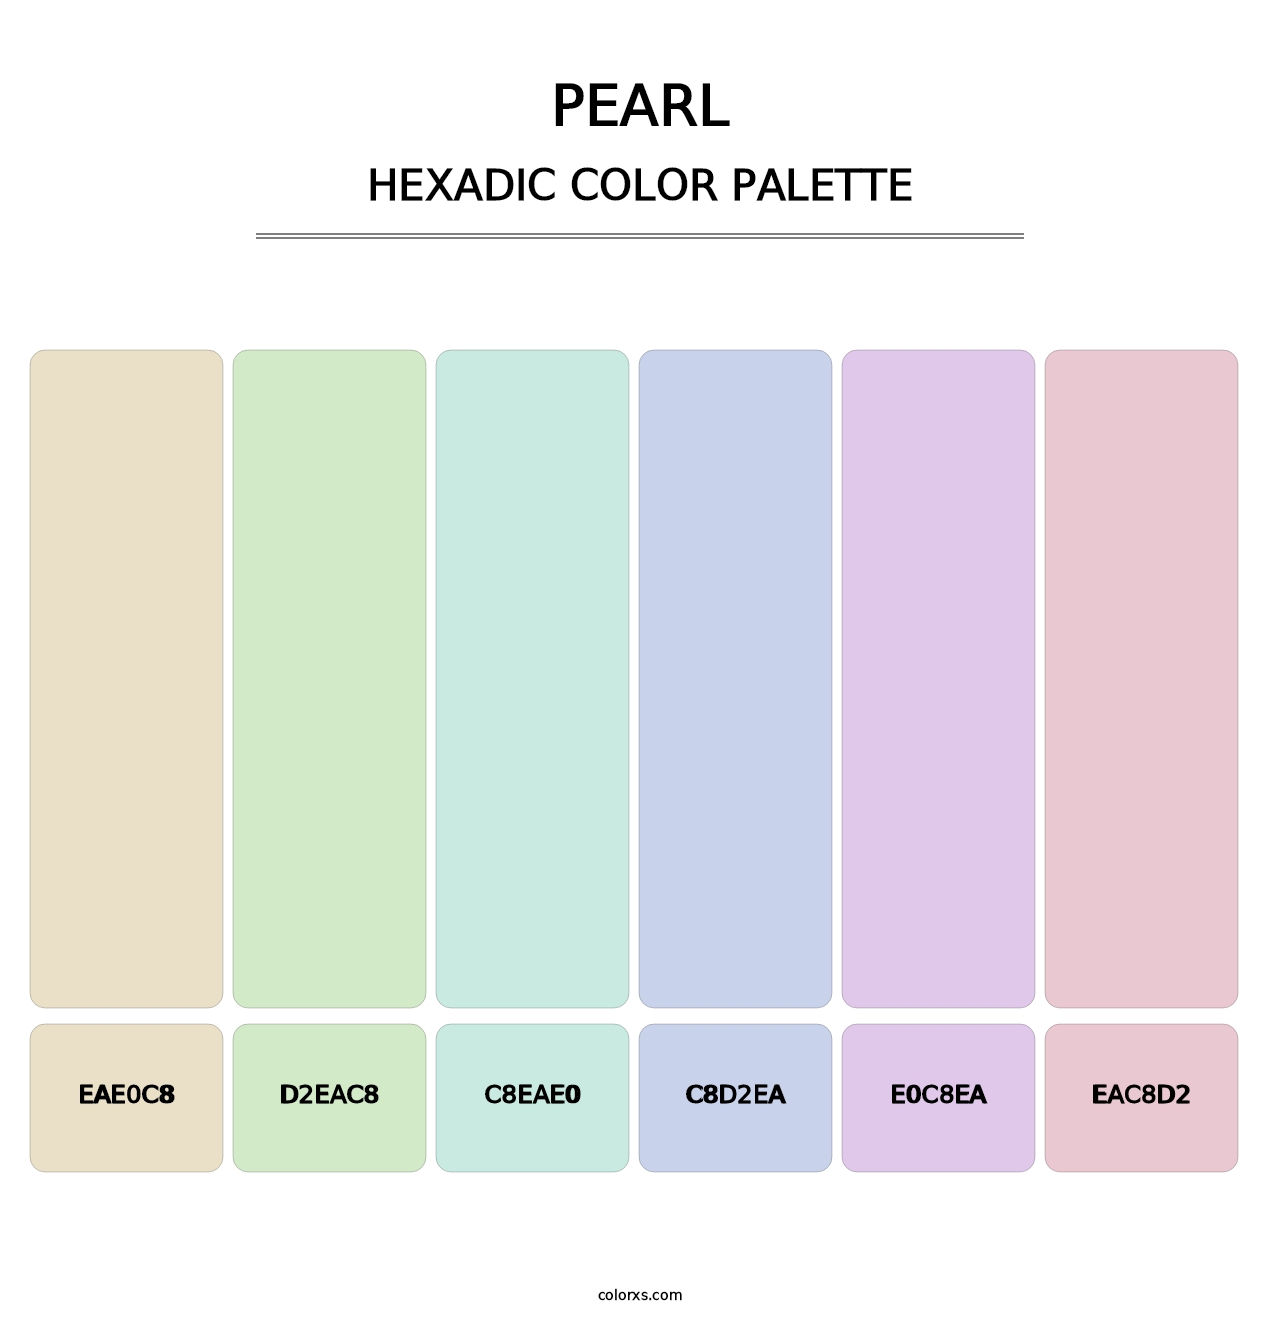 Pearl - Hexadic Color Palette